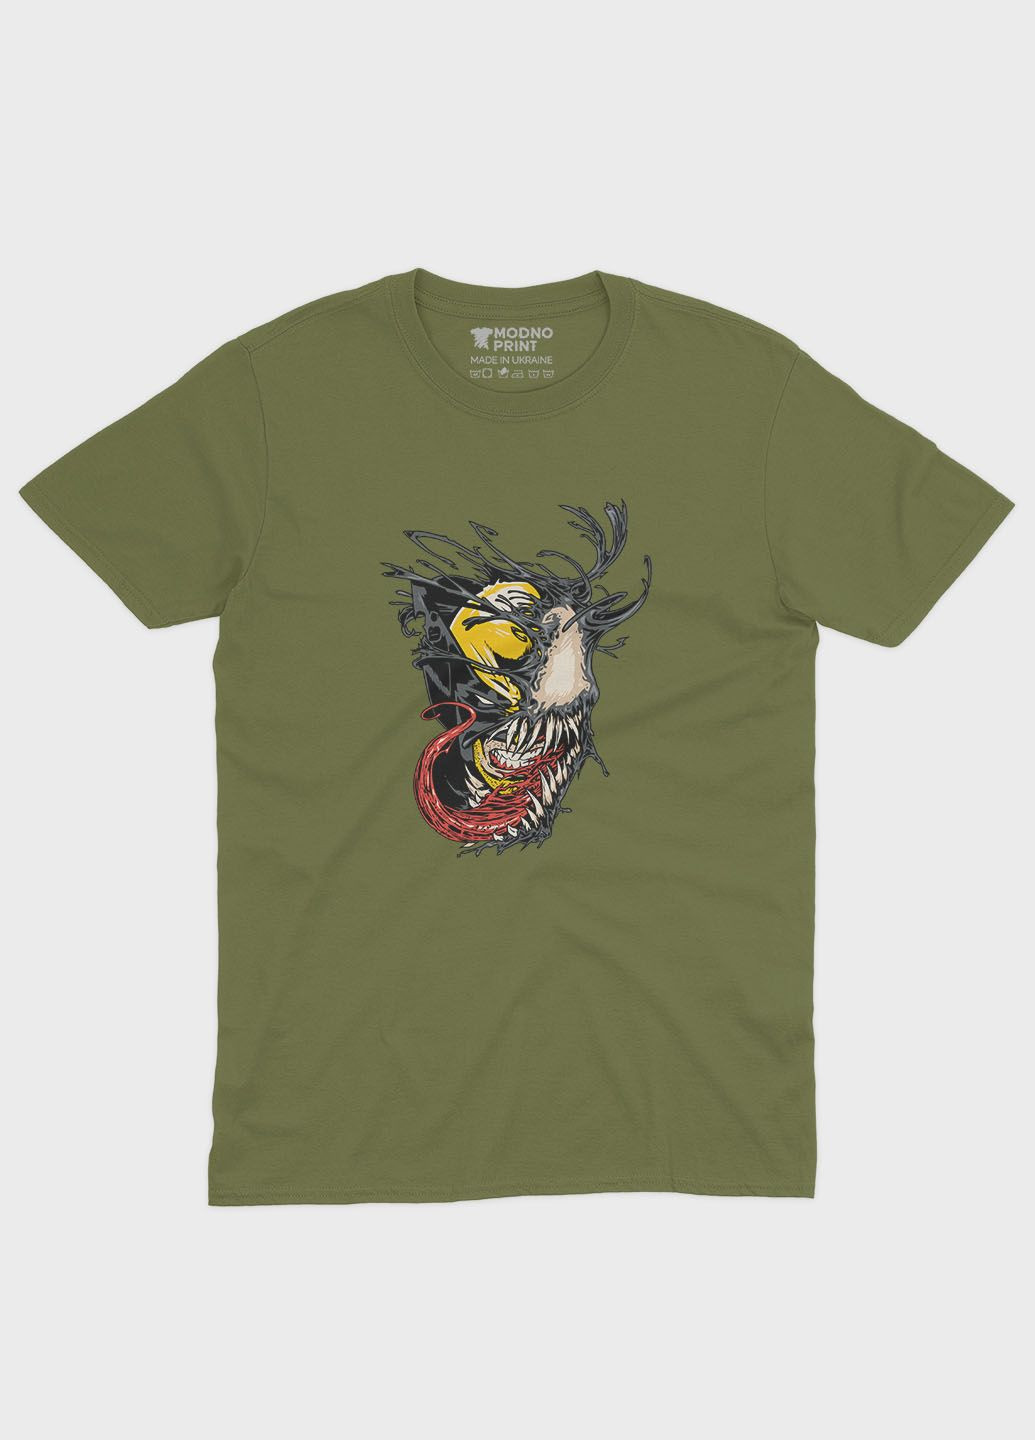 Хаки (оливковая) мужская футболка с принтом супервора - веном (ts001-1-hgr-006-013-003) Modno